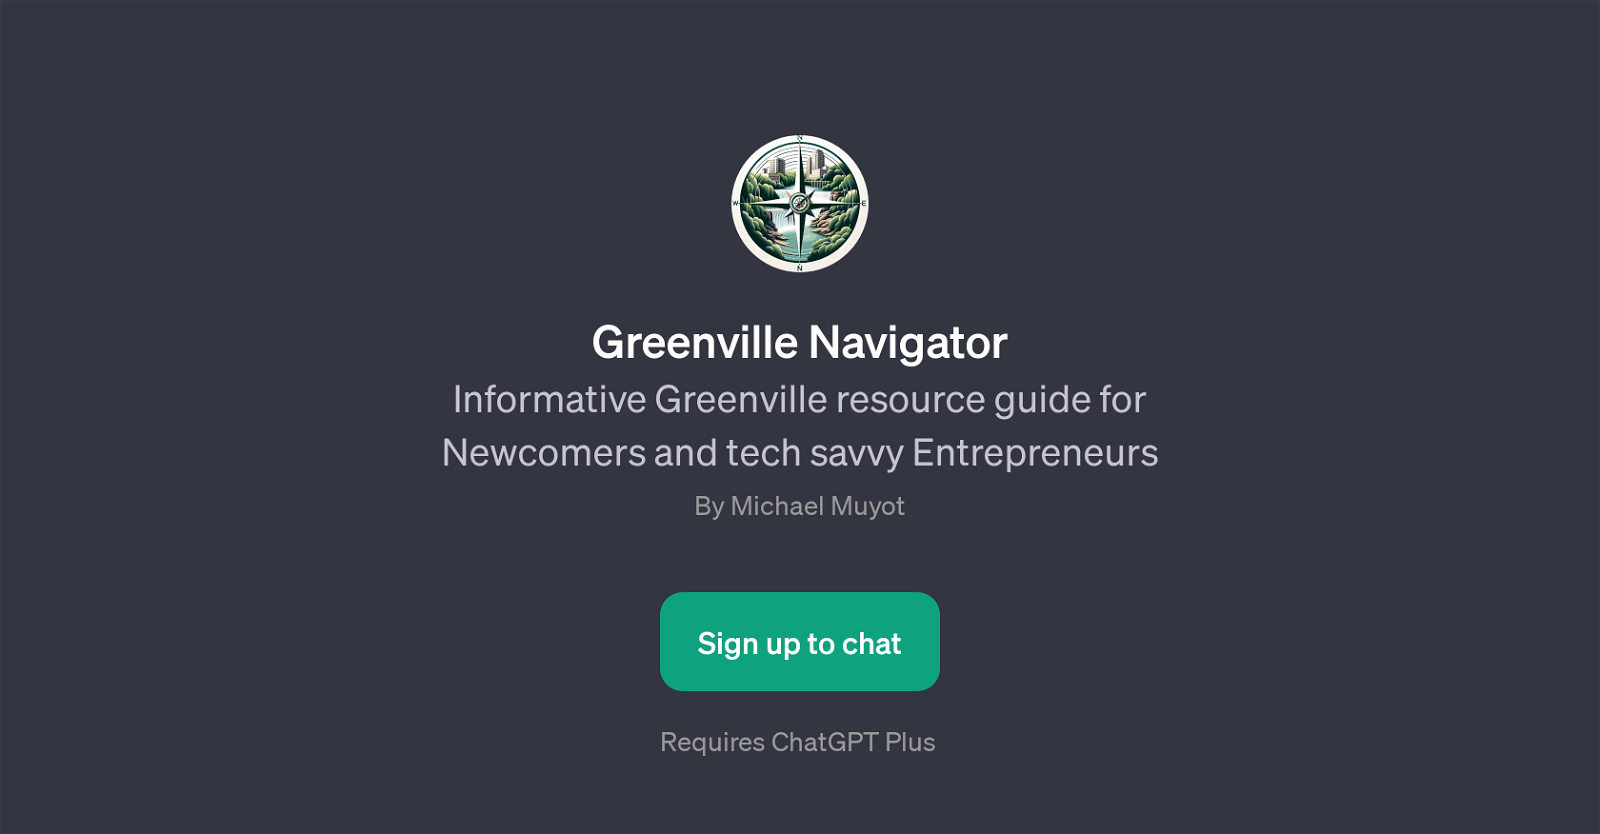 Greenville Navigator website